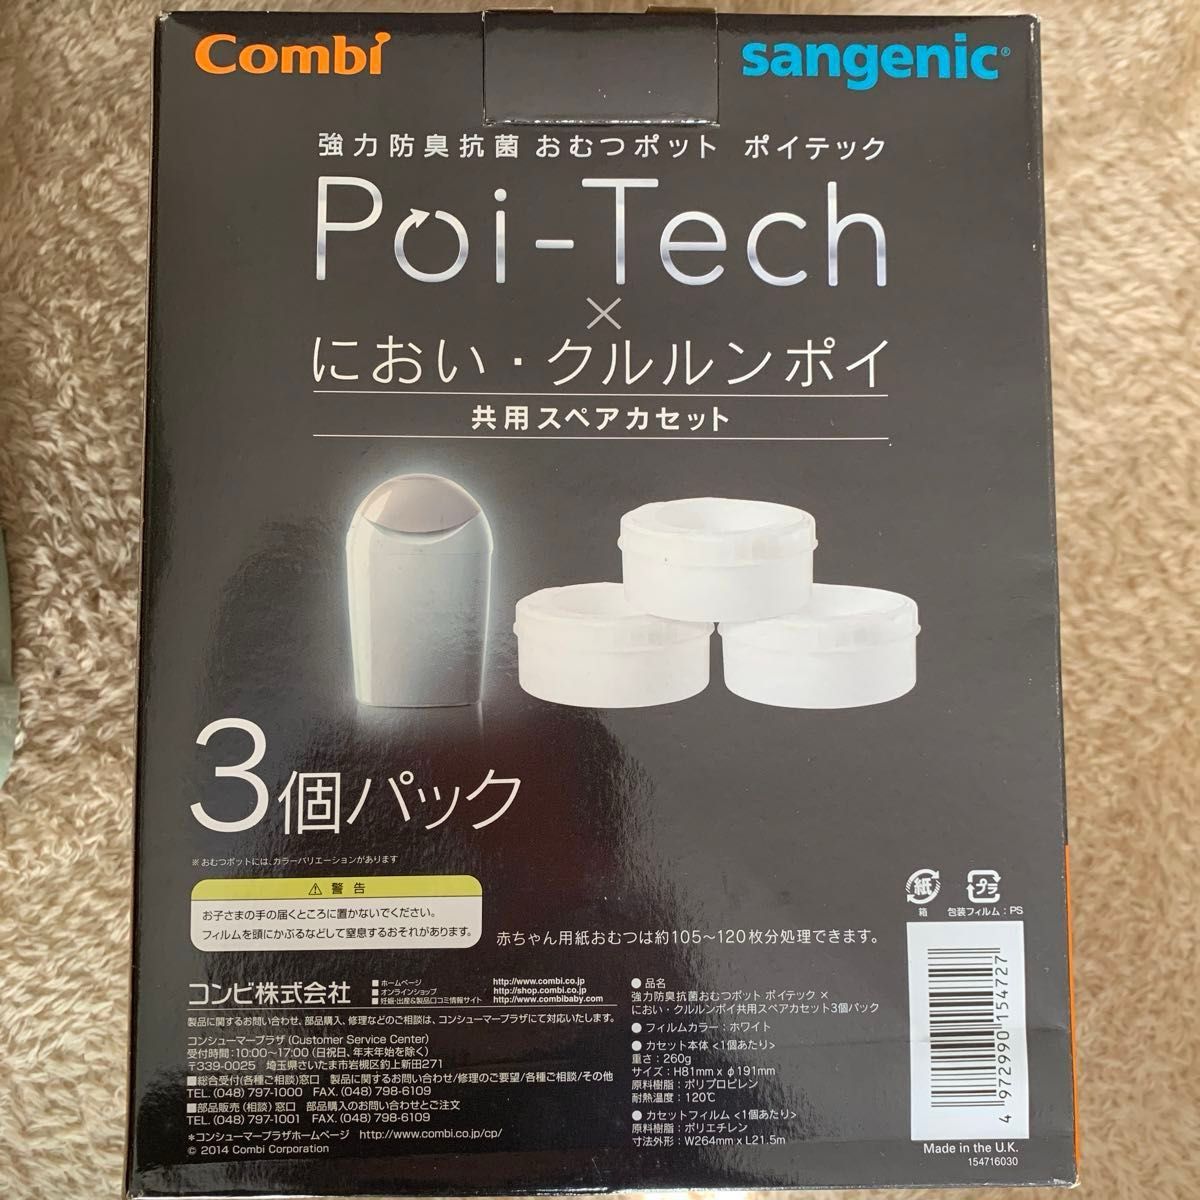 Poi-Tech 強力防臭抗菌 おむつポット ポイテック Combi おむつポット　スペアカセット3個